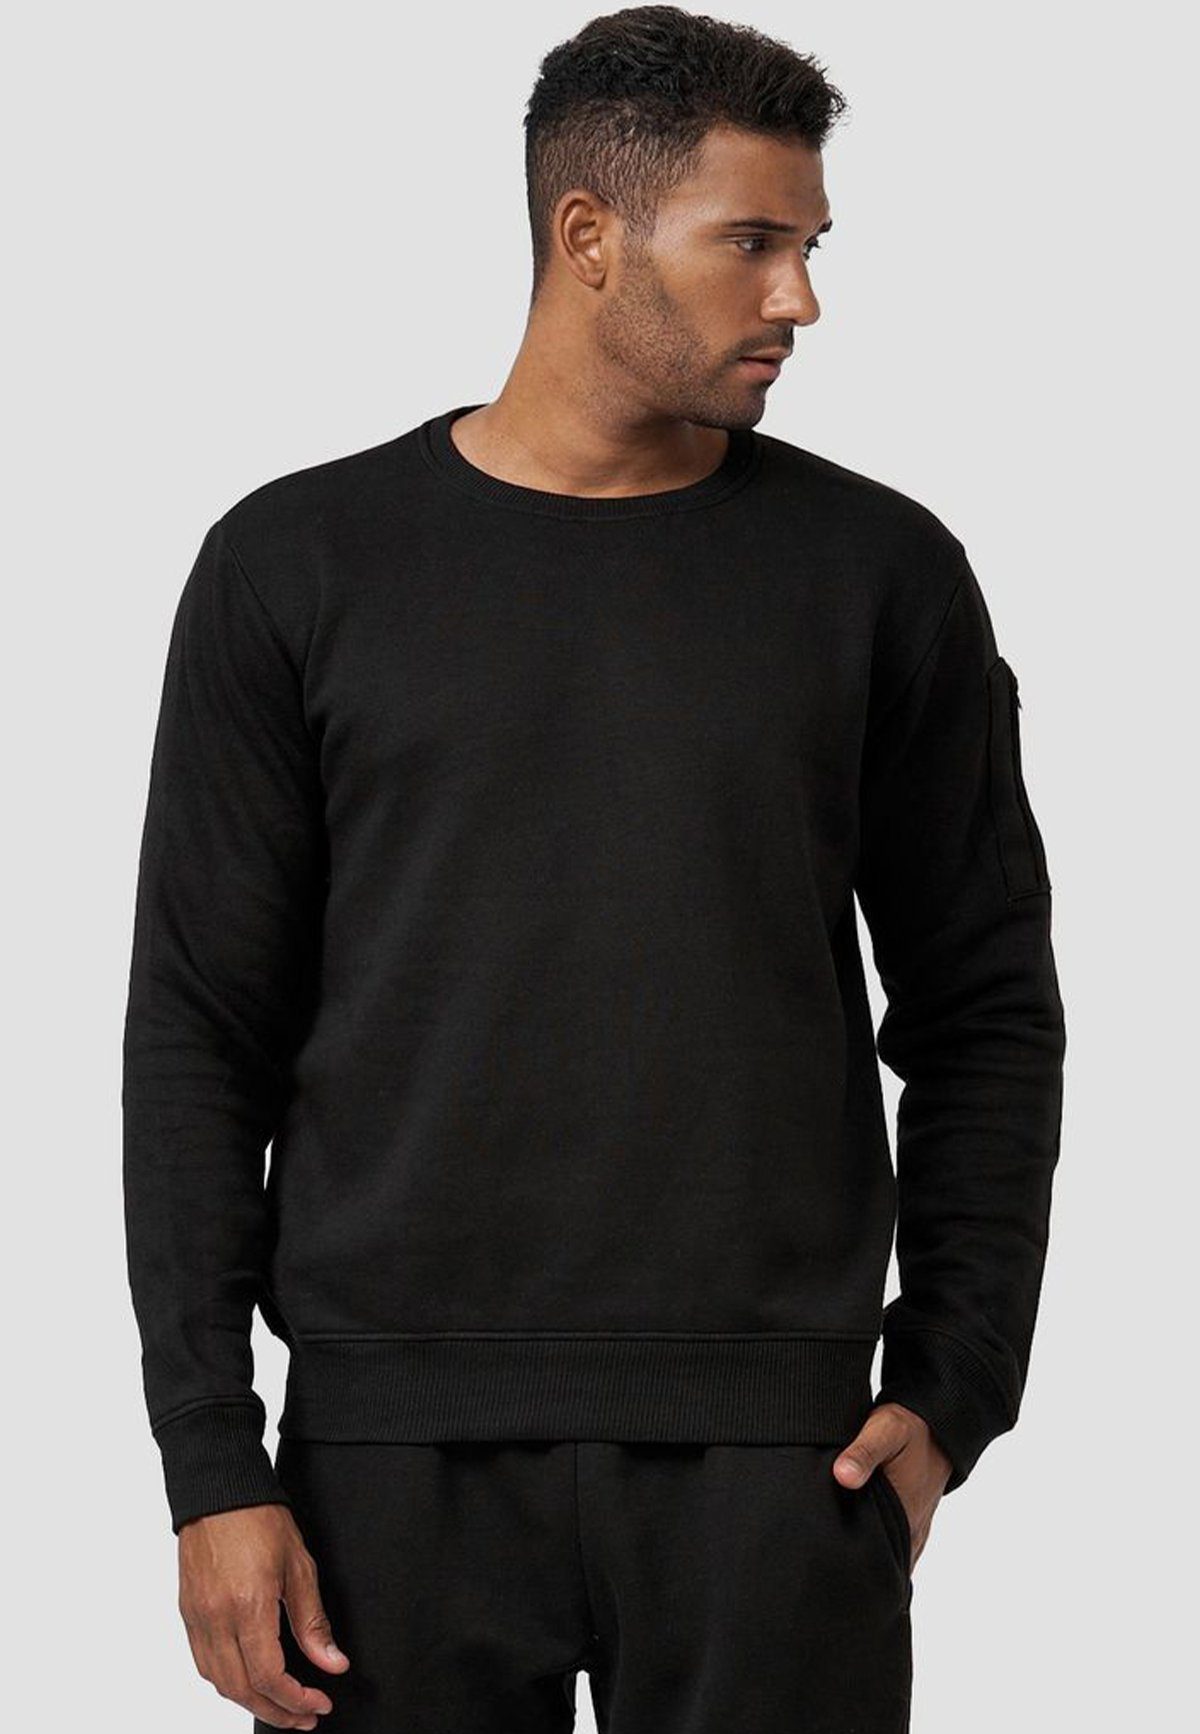 mit Sweatshirt ohne Kapuze Schwarz Sweatshirt 4240 Armtasche in Egomaxx Pullover